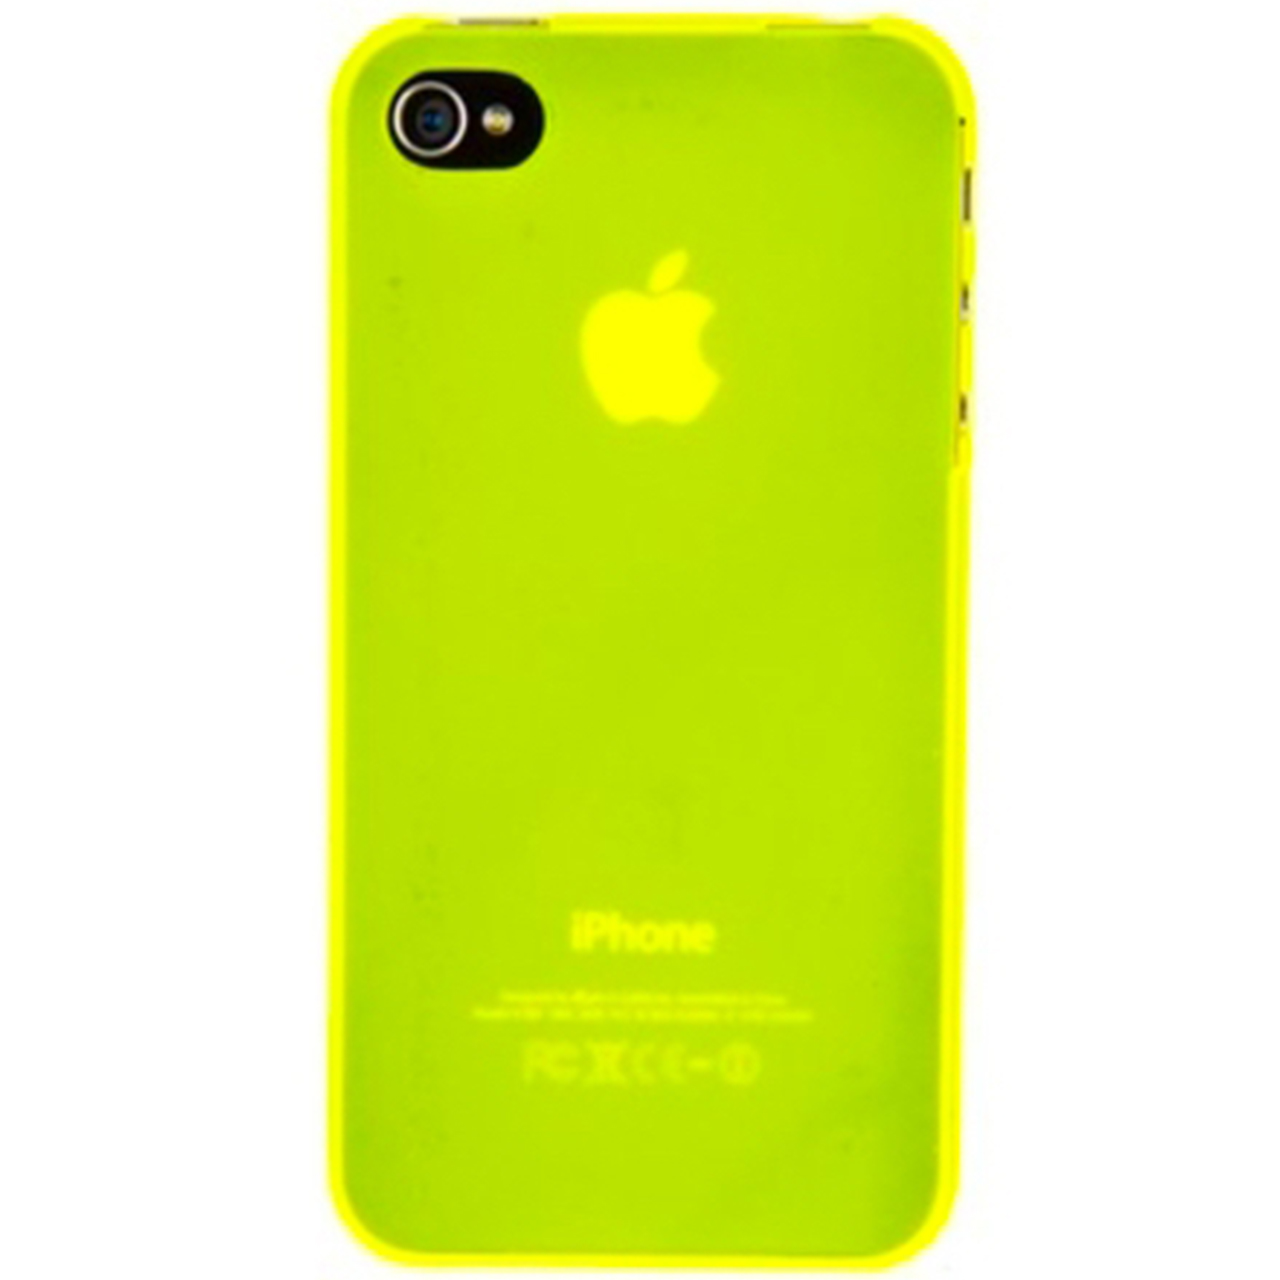 نقد و بررسی کاور زینبو مدل Hyun Shell مناسب برای گوشی موبایل اپل iPhone 4/4s توسط خریداران